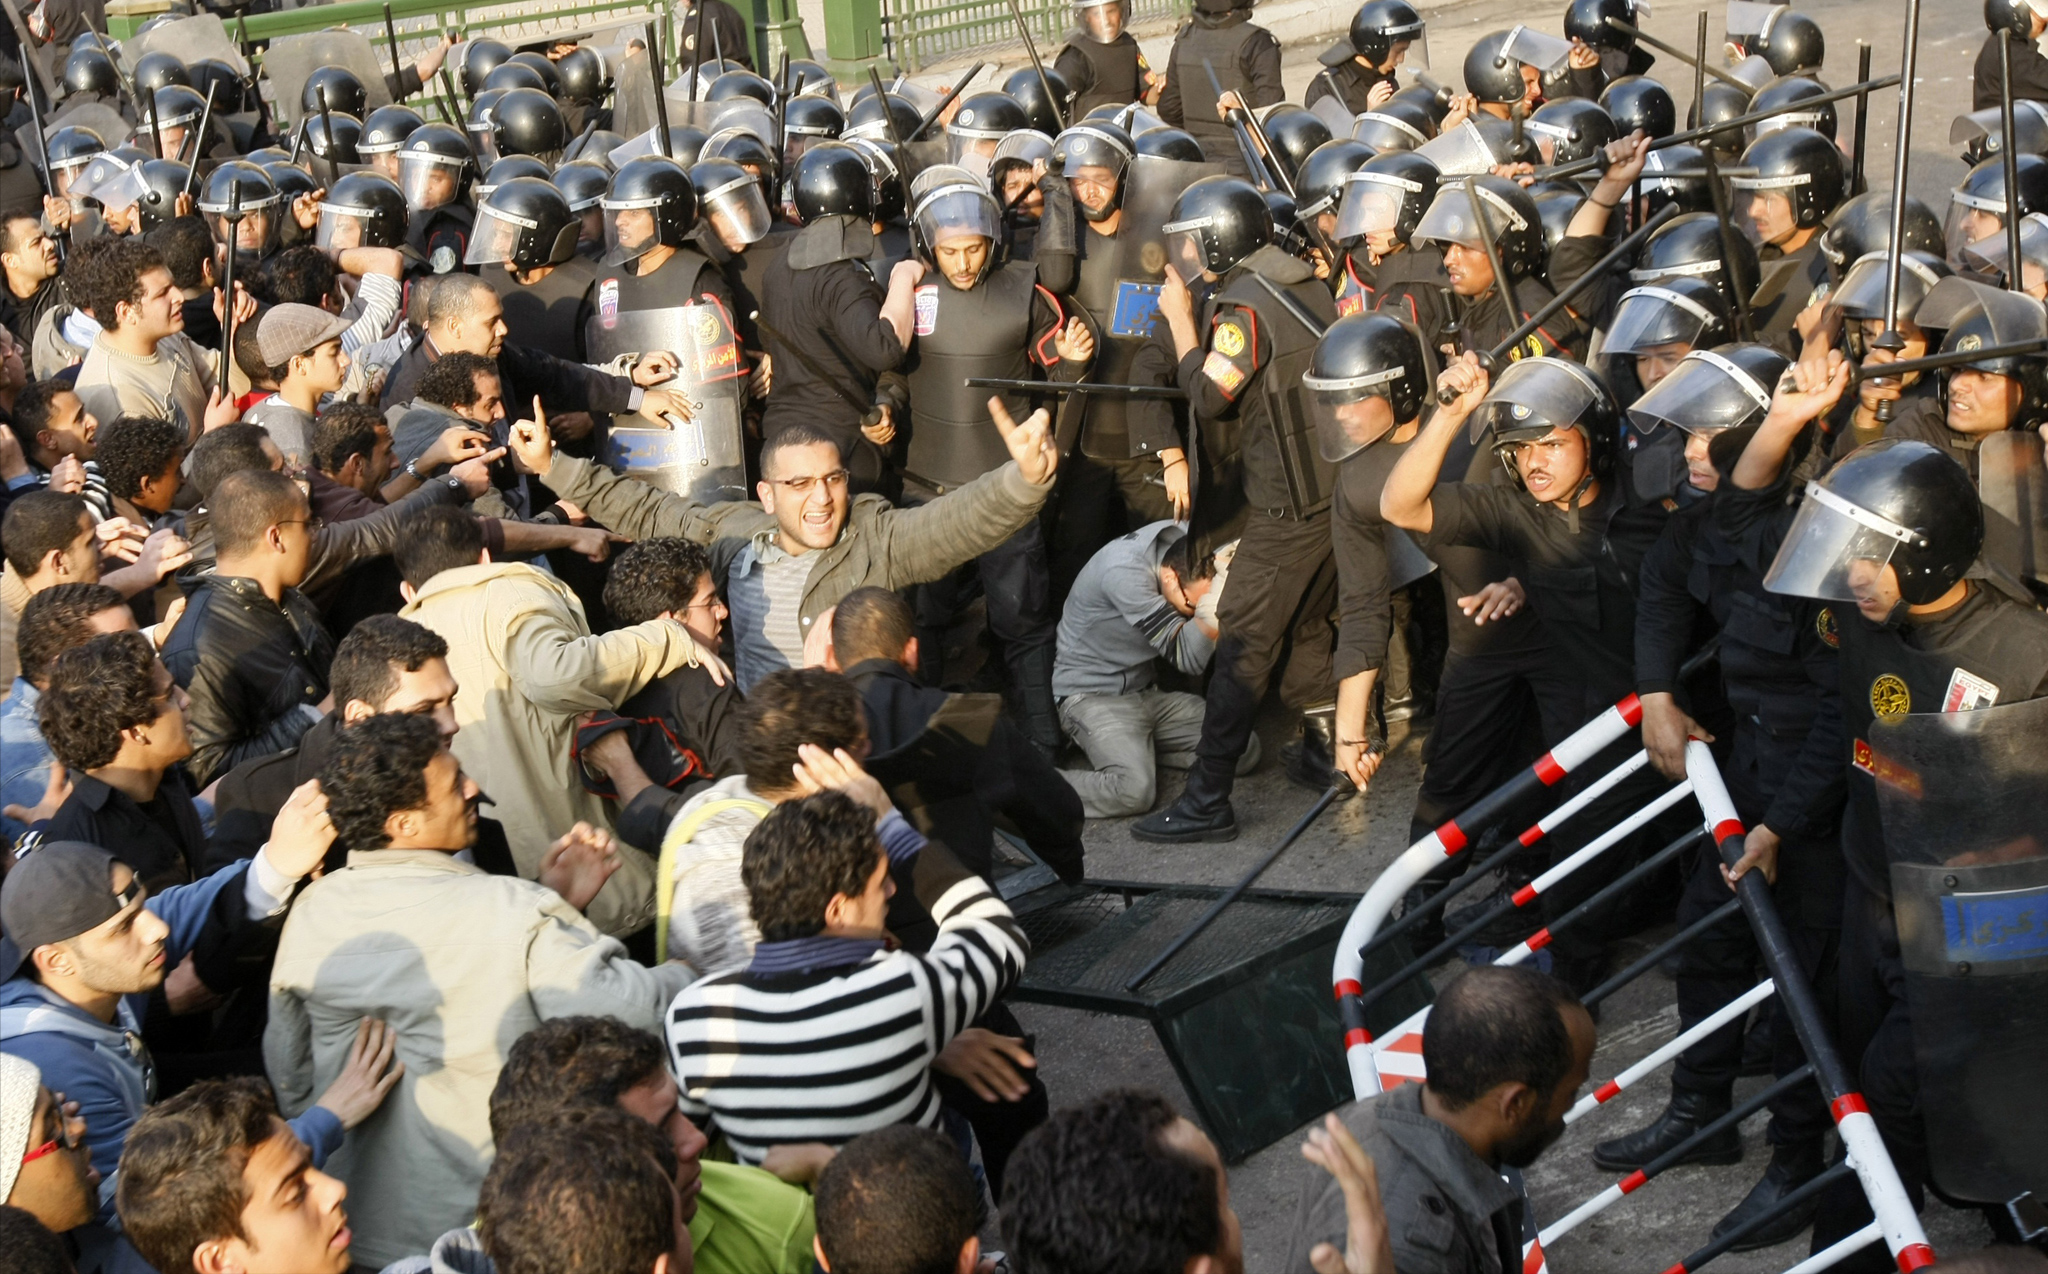 اختار المتظاهرون تاريخ 25 يناير/كانون الثاني تحديا للشرطة في يوم عيدها واحتجاجا على تعذيب المواطنين. <br>
(ا ف ب)
